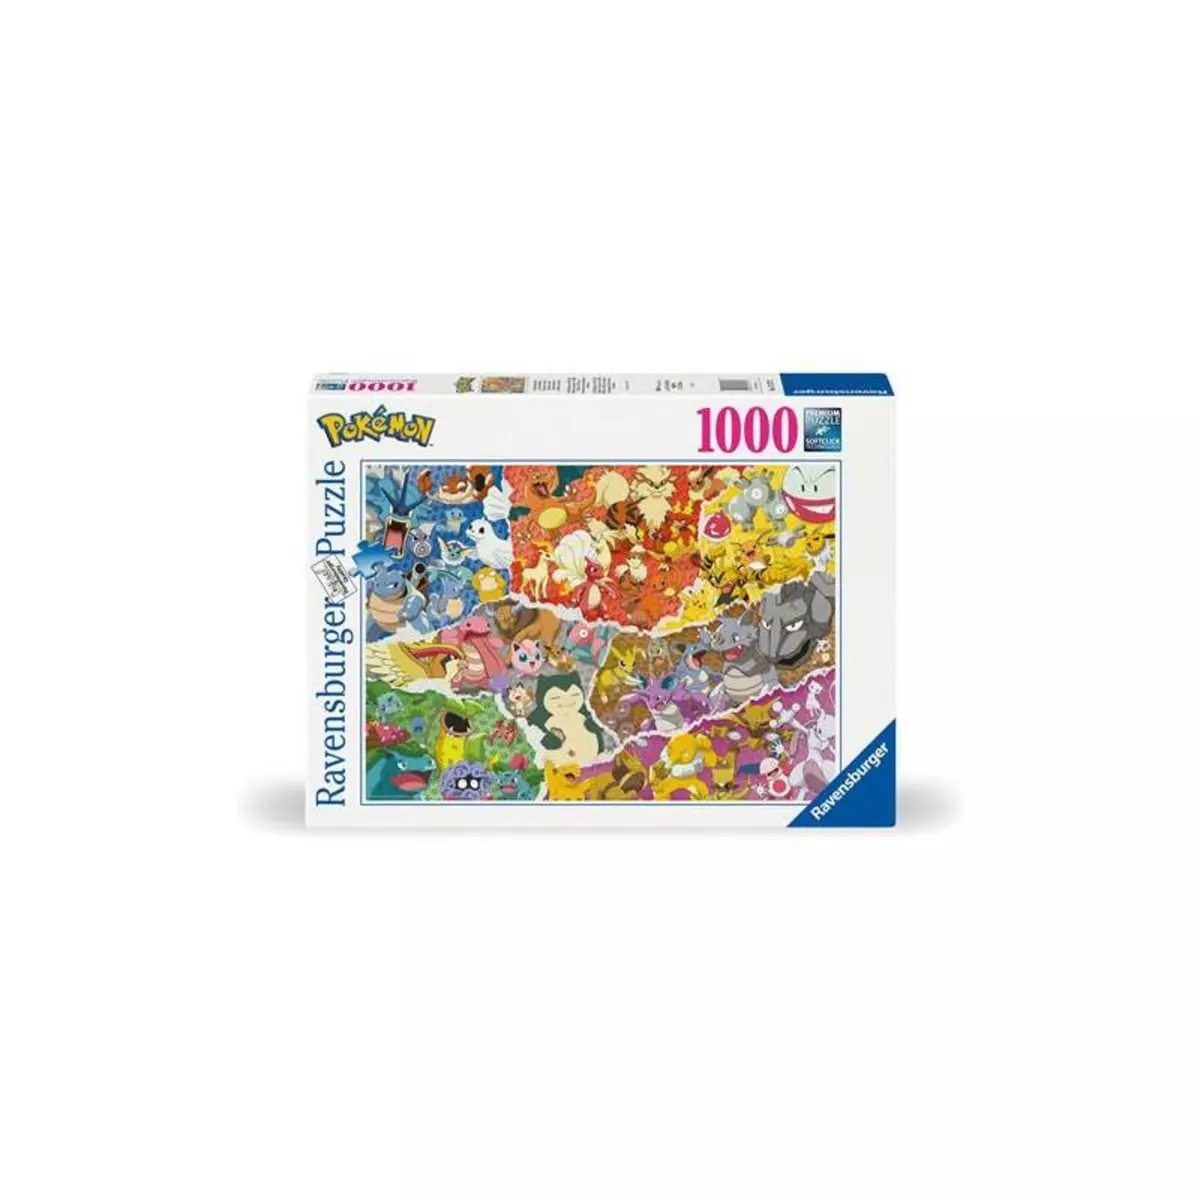 RAVENSBURGER Puzzle Ravensburger Pokémon 1000 pièces